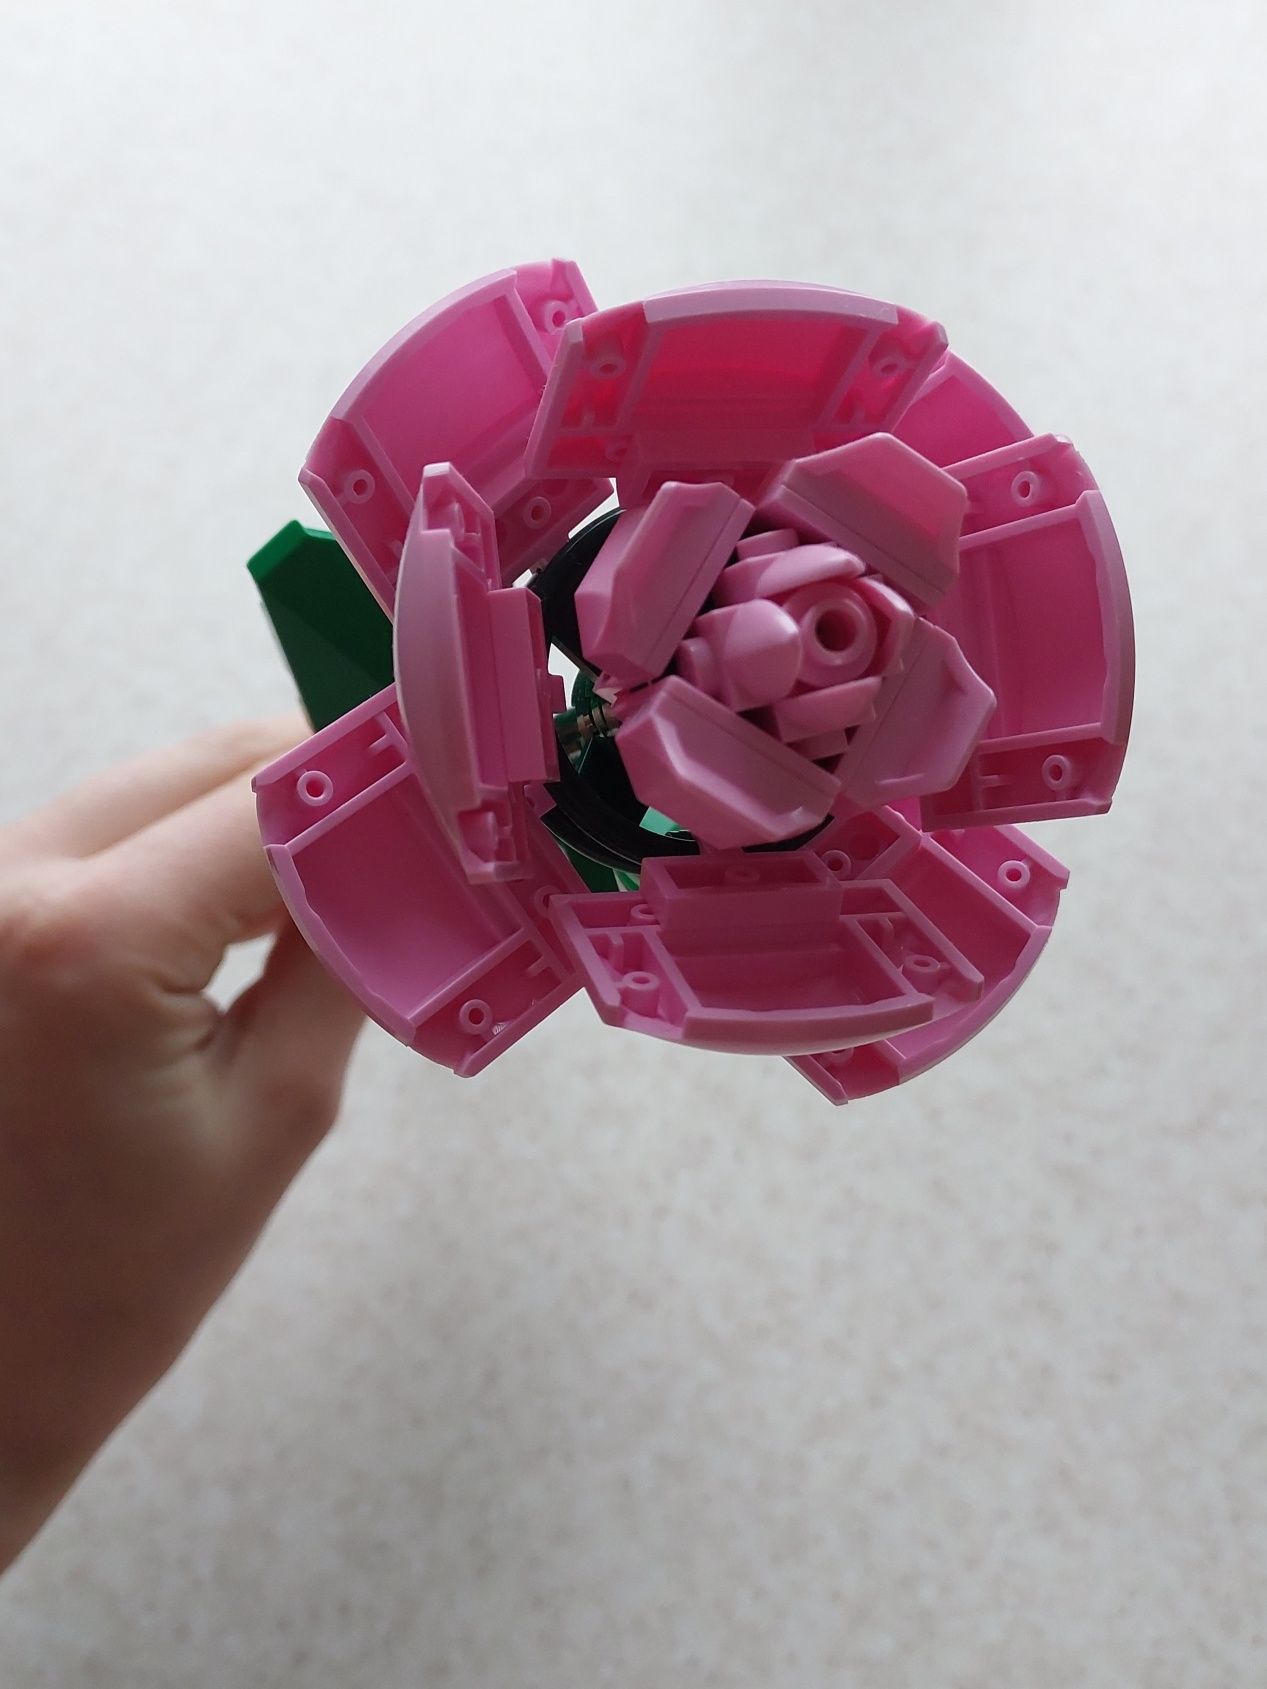 дитячі іграшки конструктор рожева квітка лего игрушки конструкторы